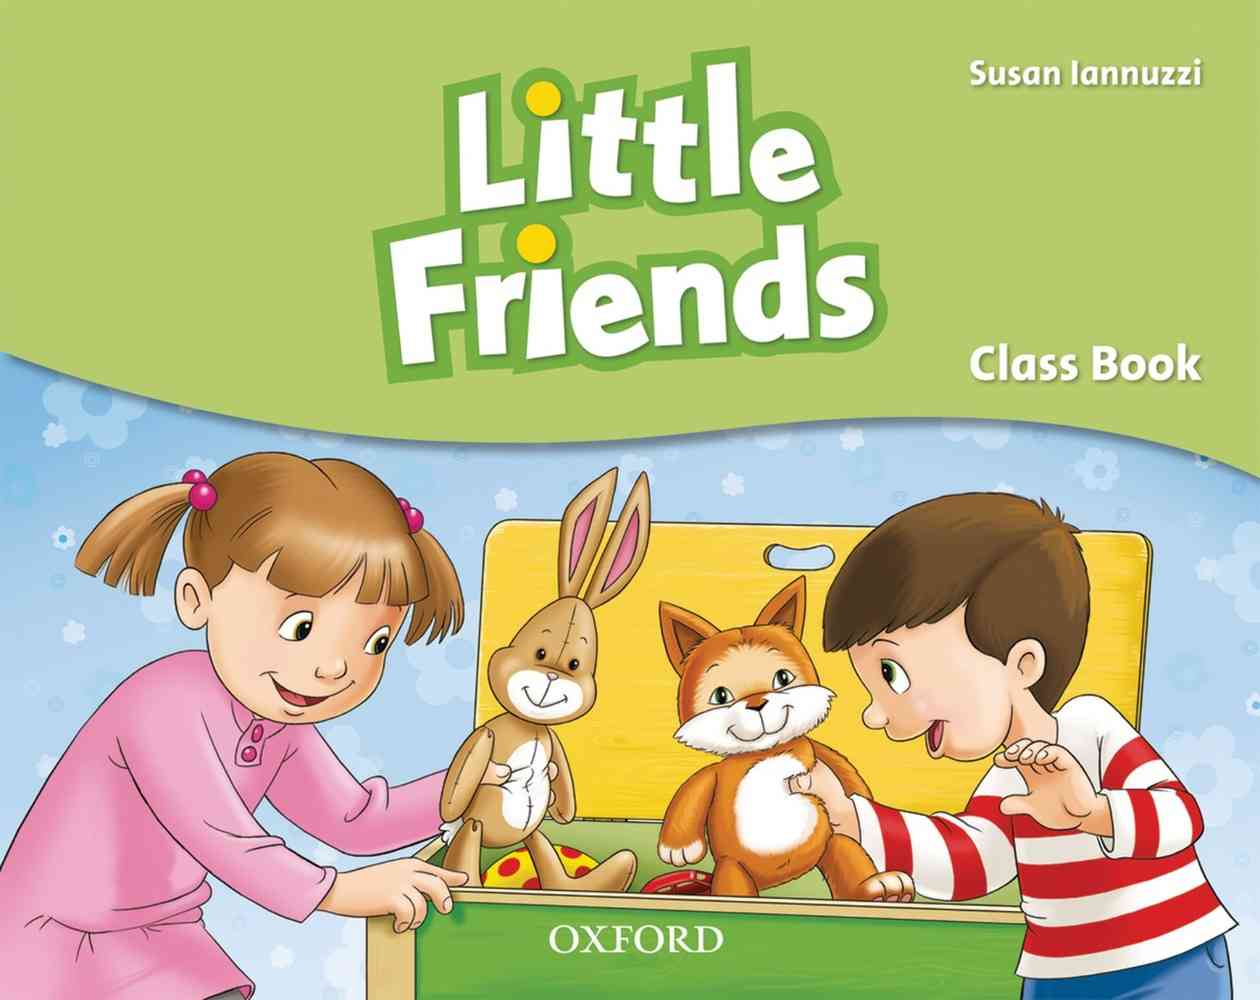 Little Friends: Student Book niculescu.ro imagine noua